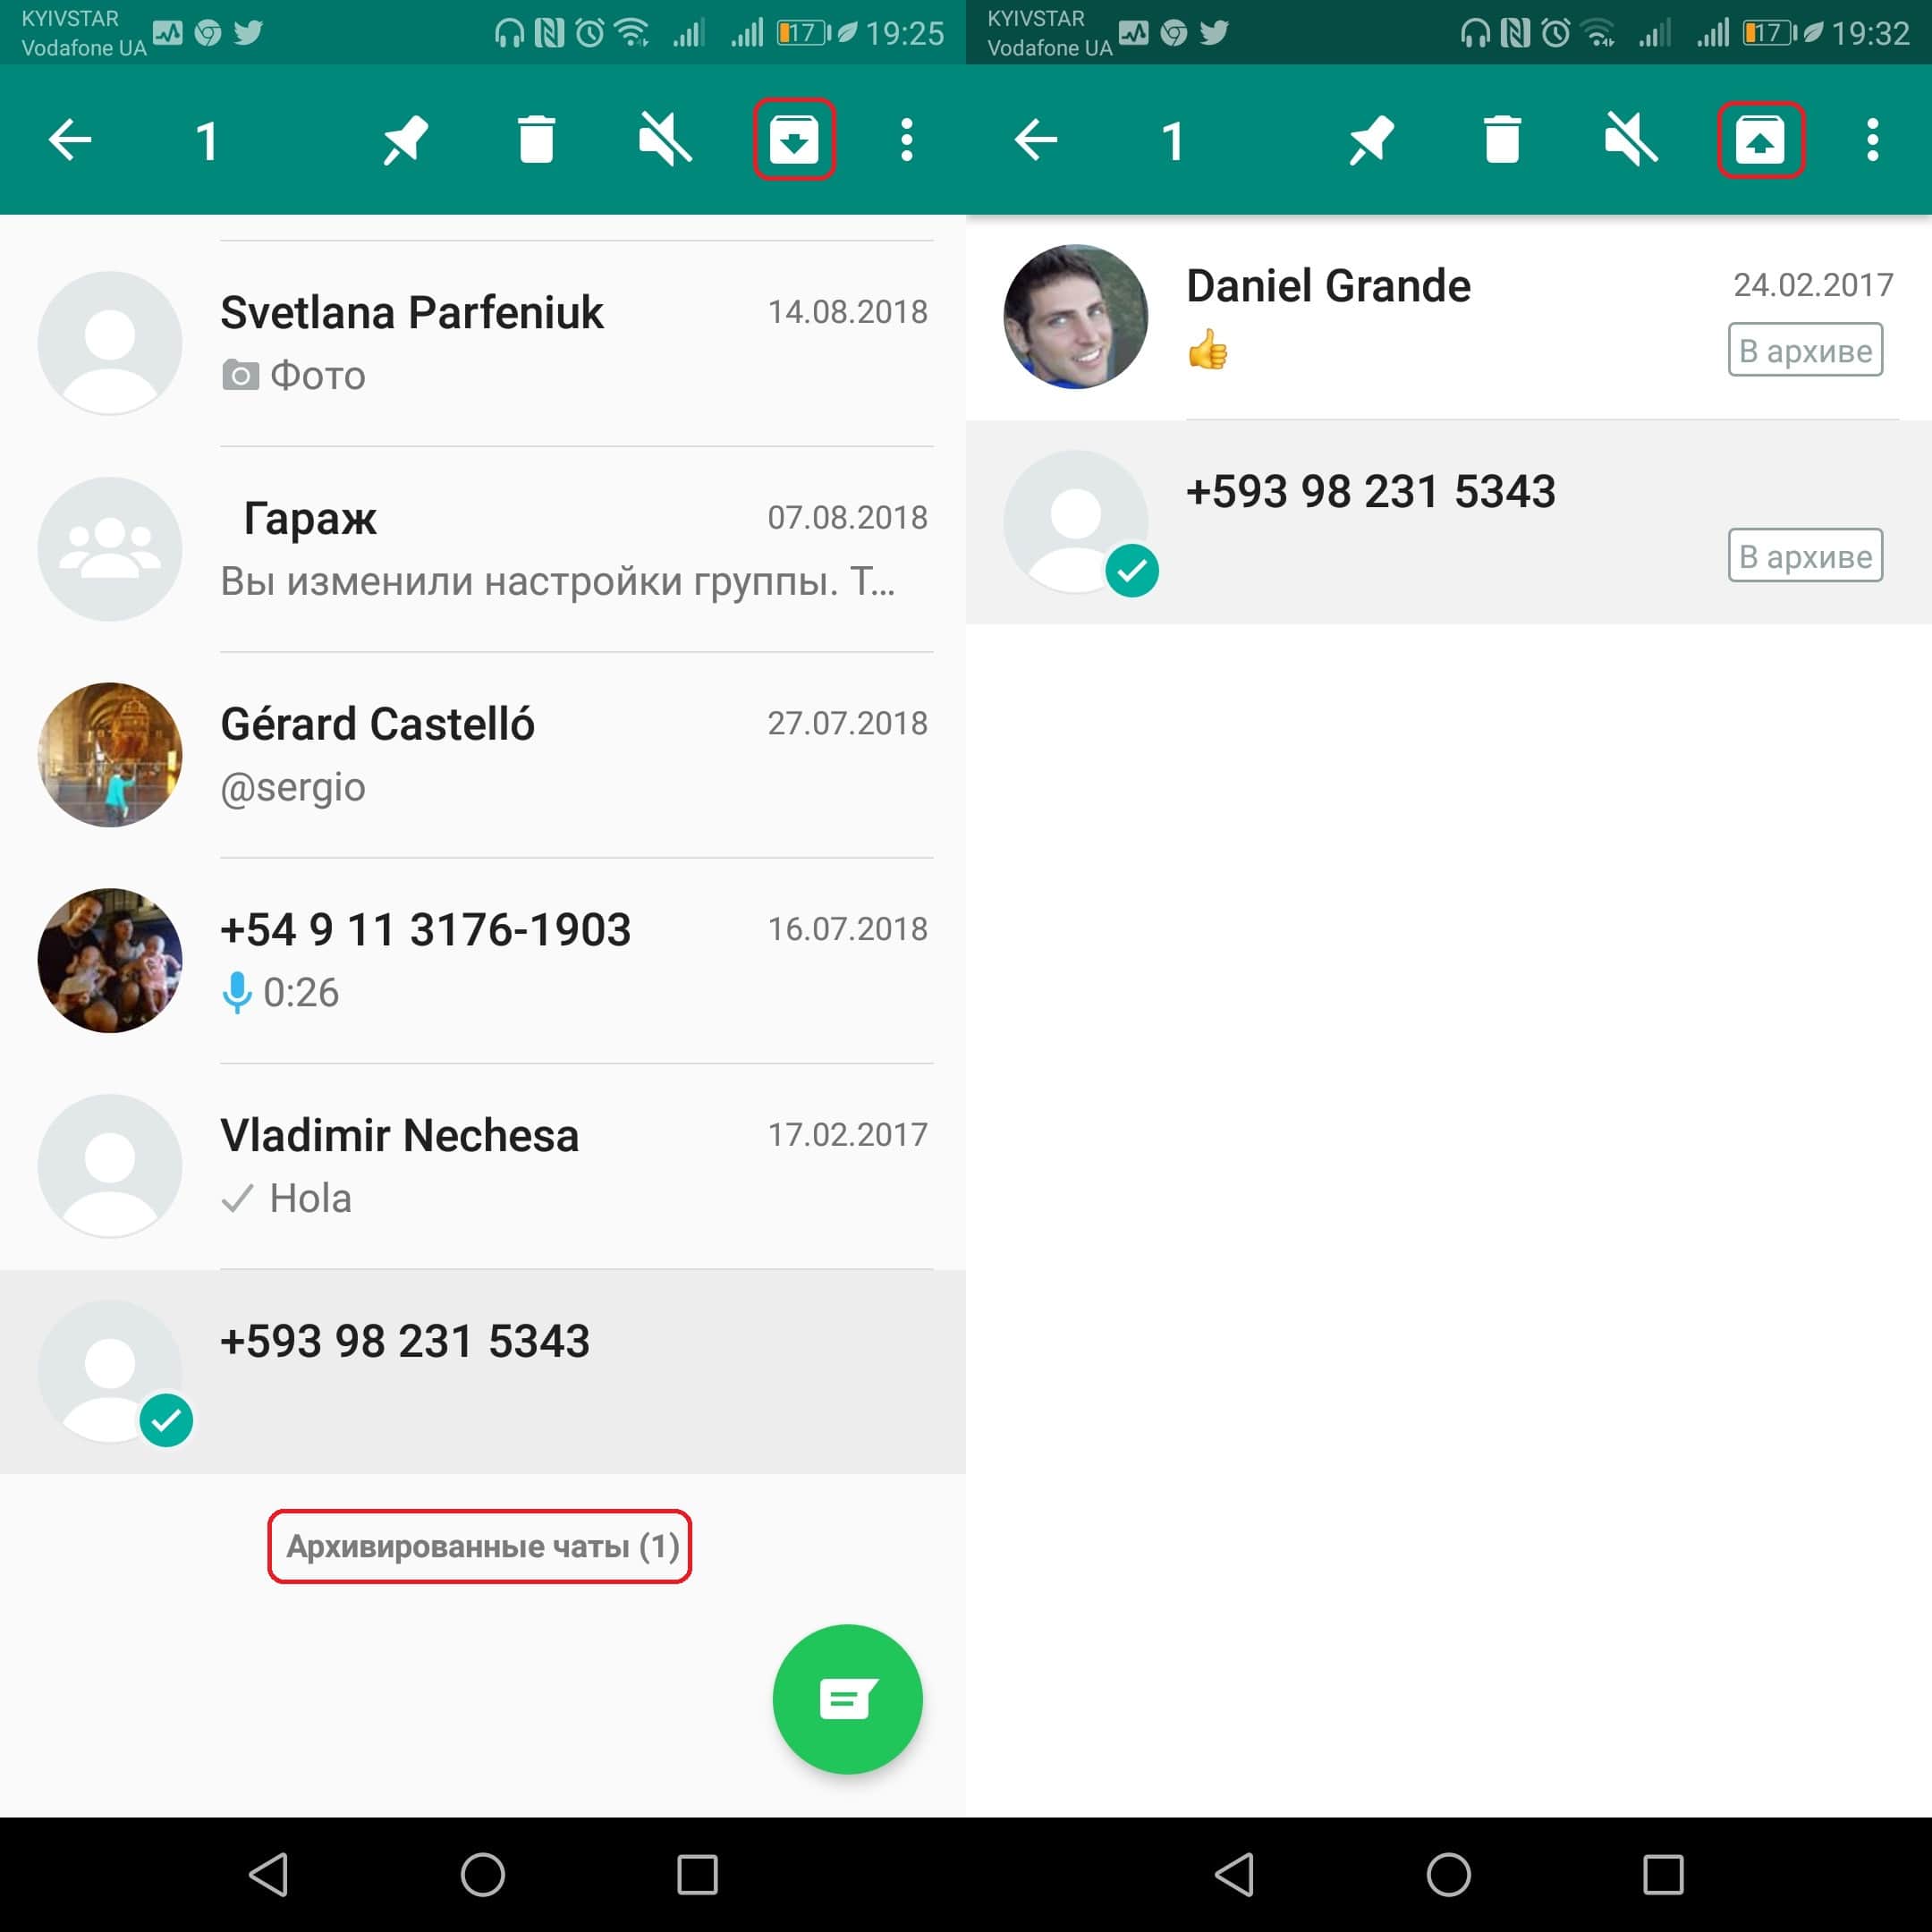 Удаление чатов в whatsapp на android: способы скрыть переписку, очистить хранилище